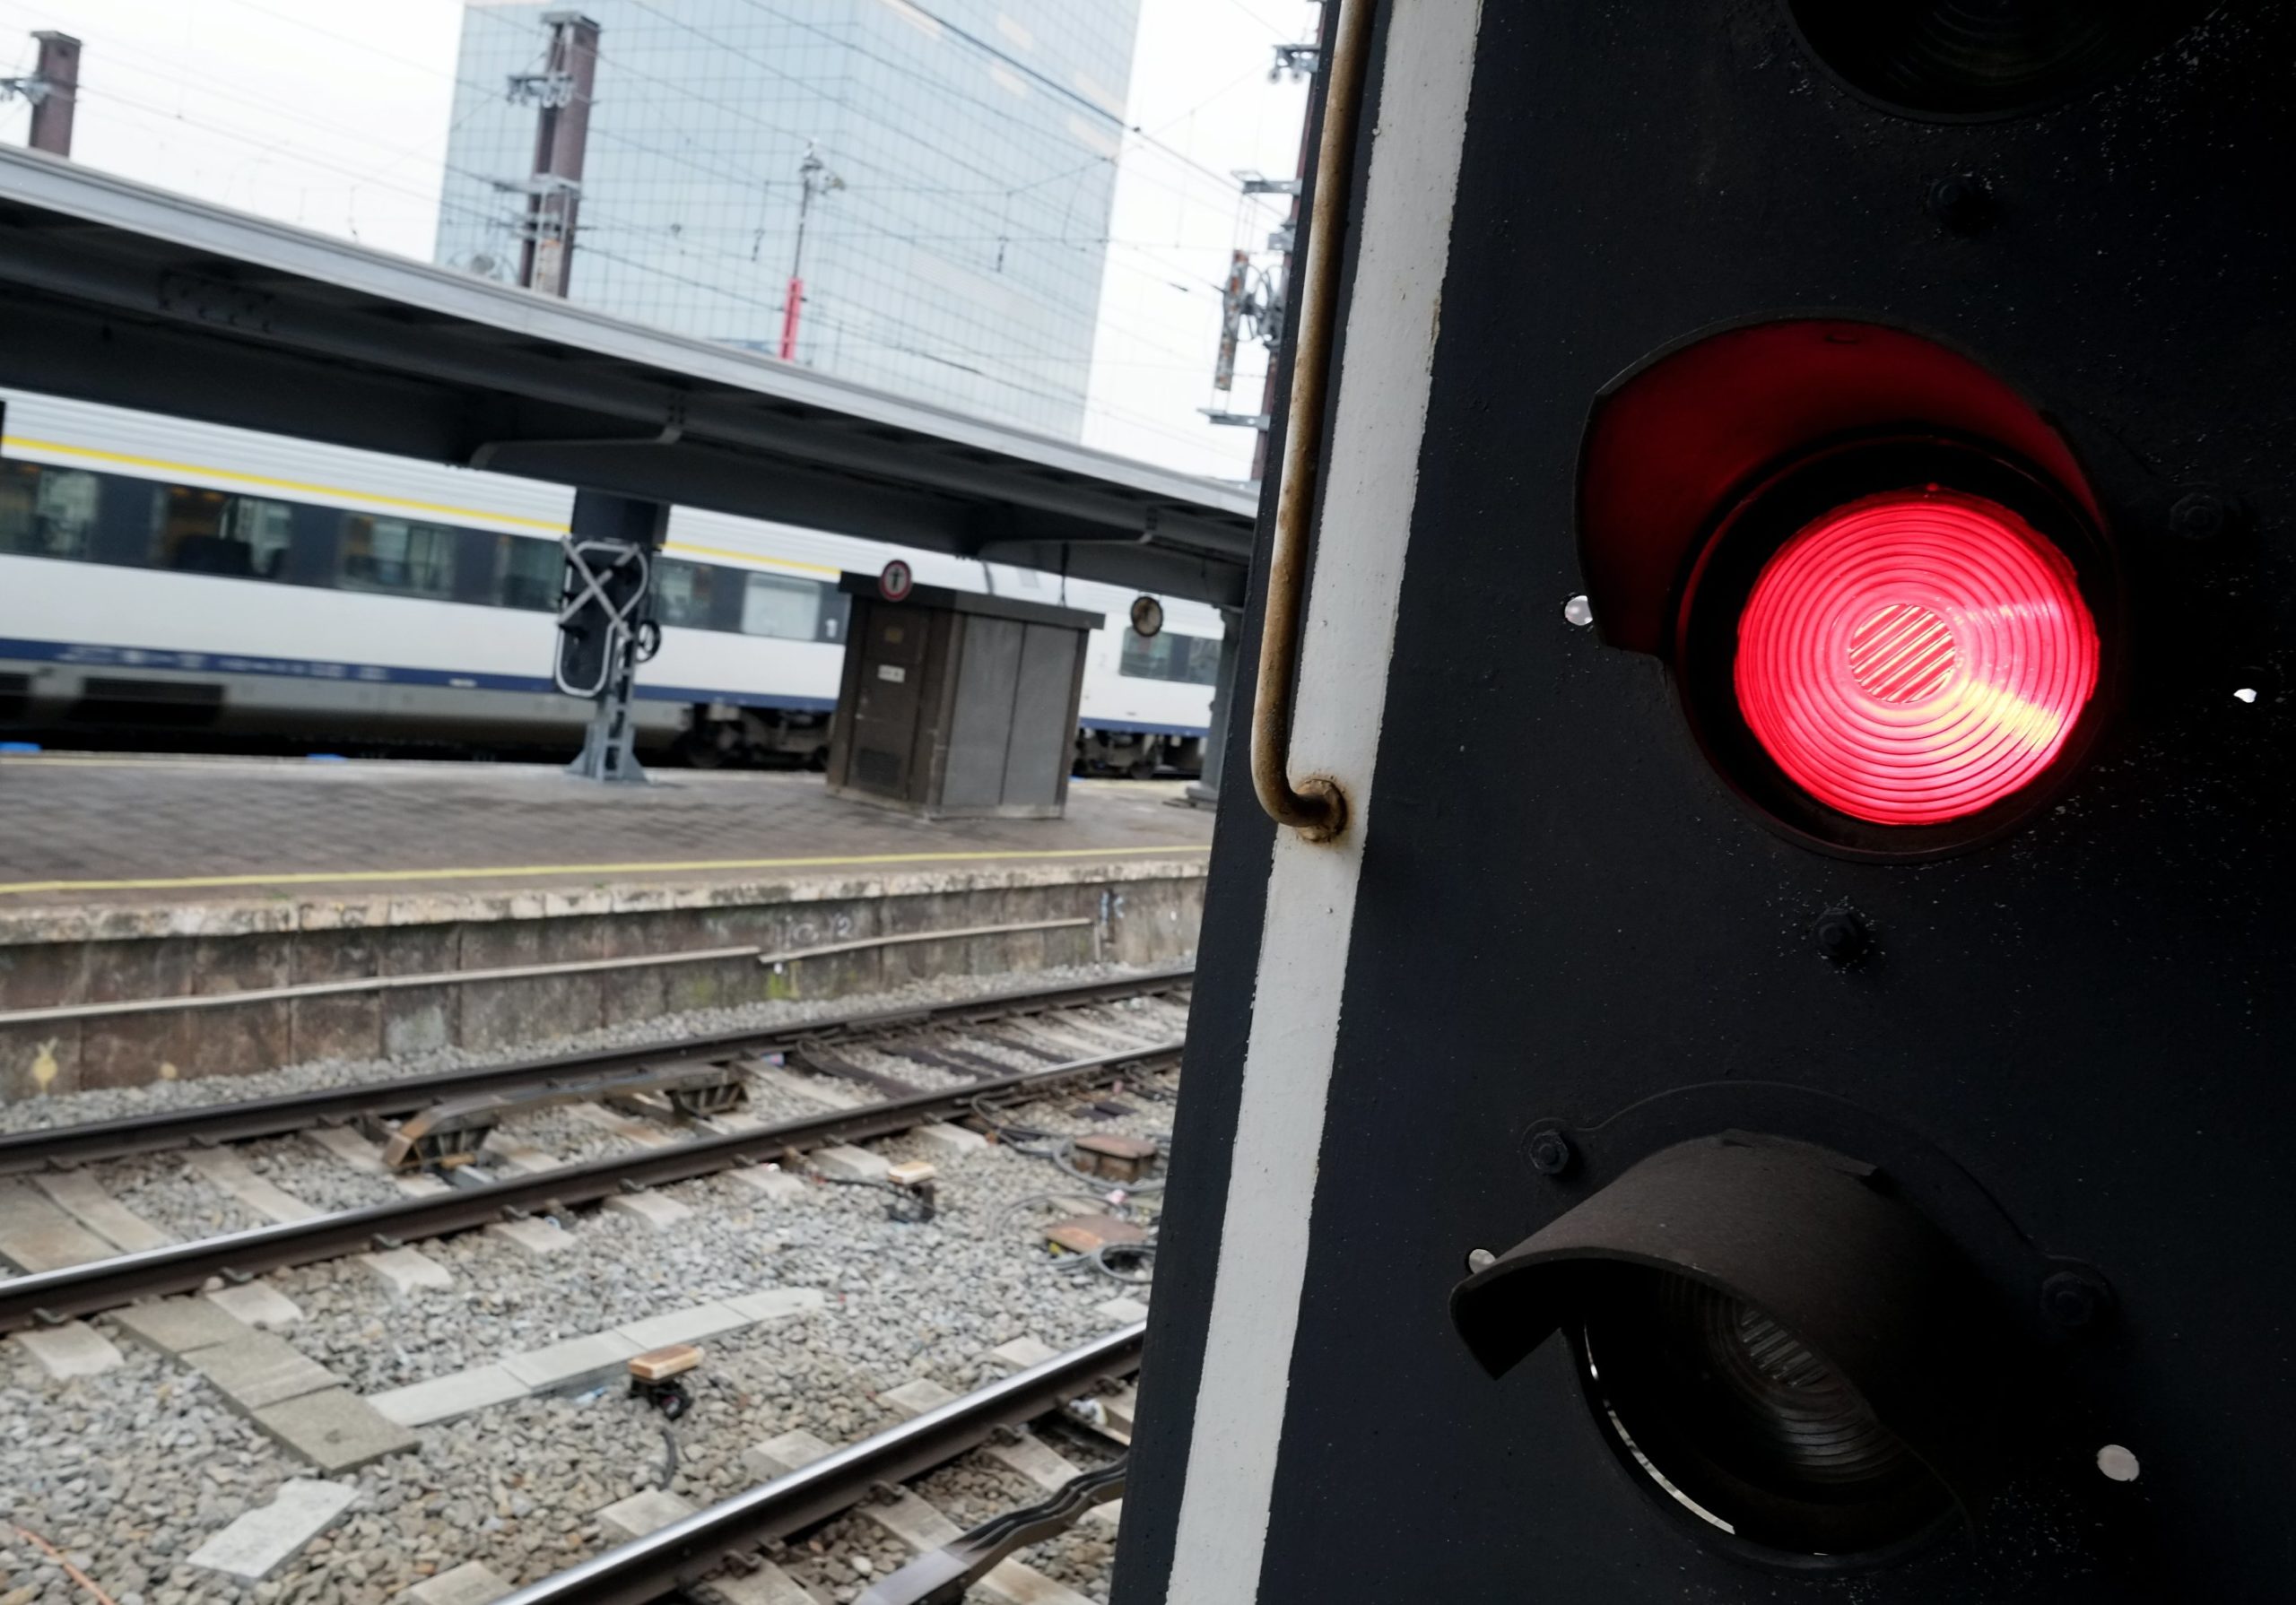 Belgium: seven trains a month jump red lights